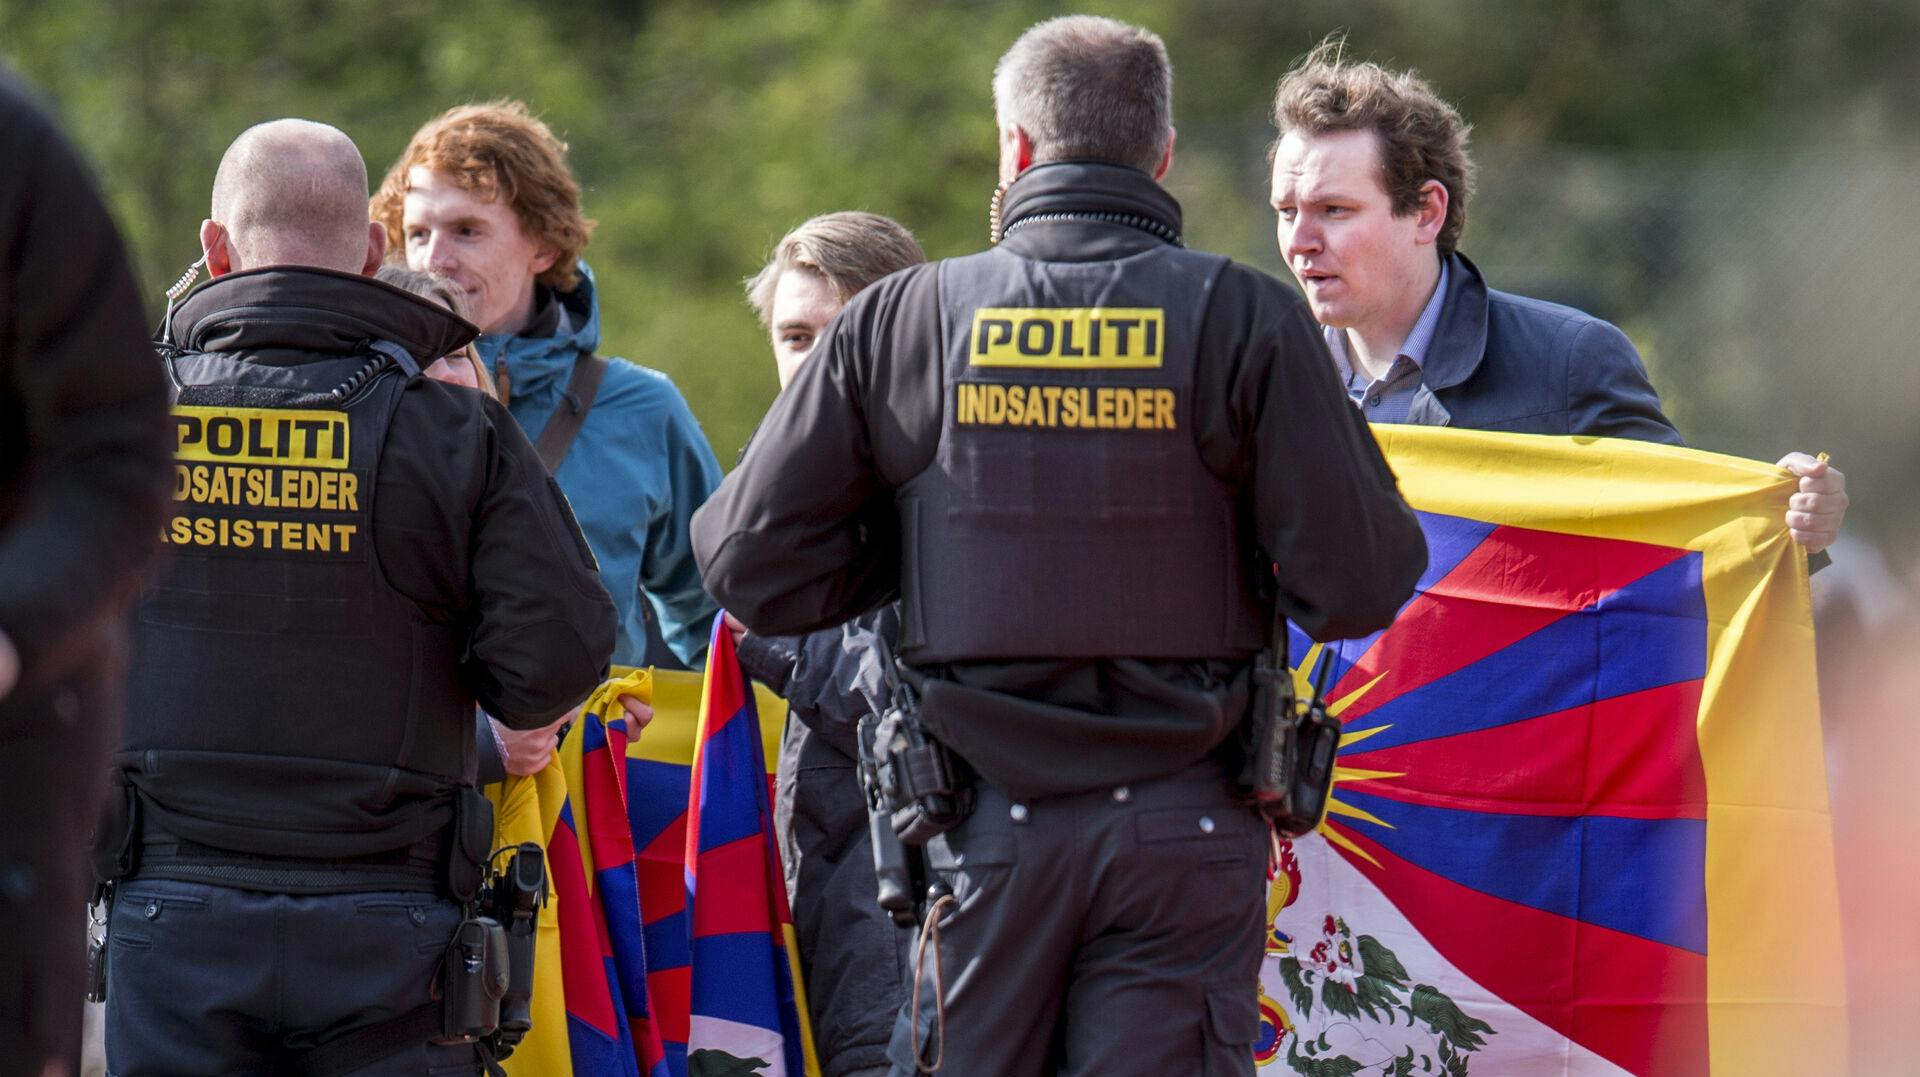 Sagen om Tibet-flagene, der blev taget fra danske demonstranter i 2012 (ikke på billedet), er stadig ikke afsluttet.